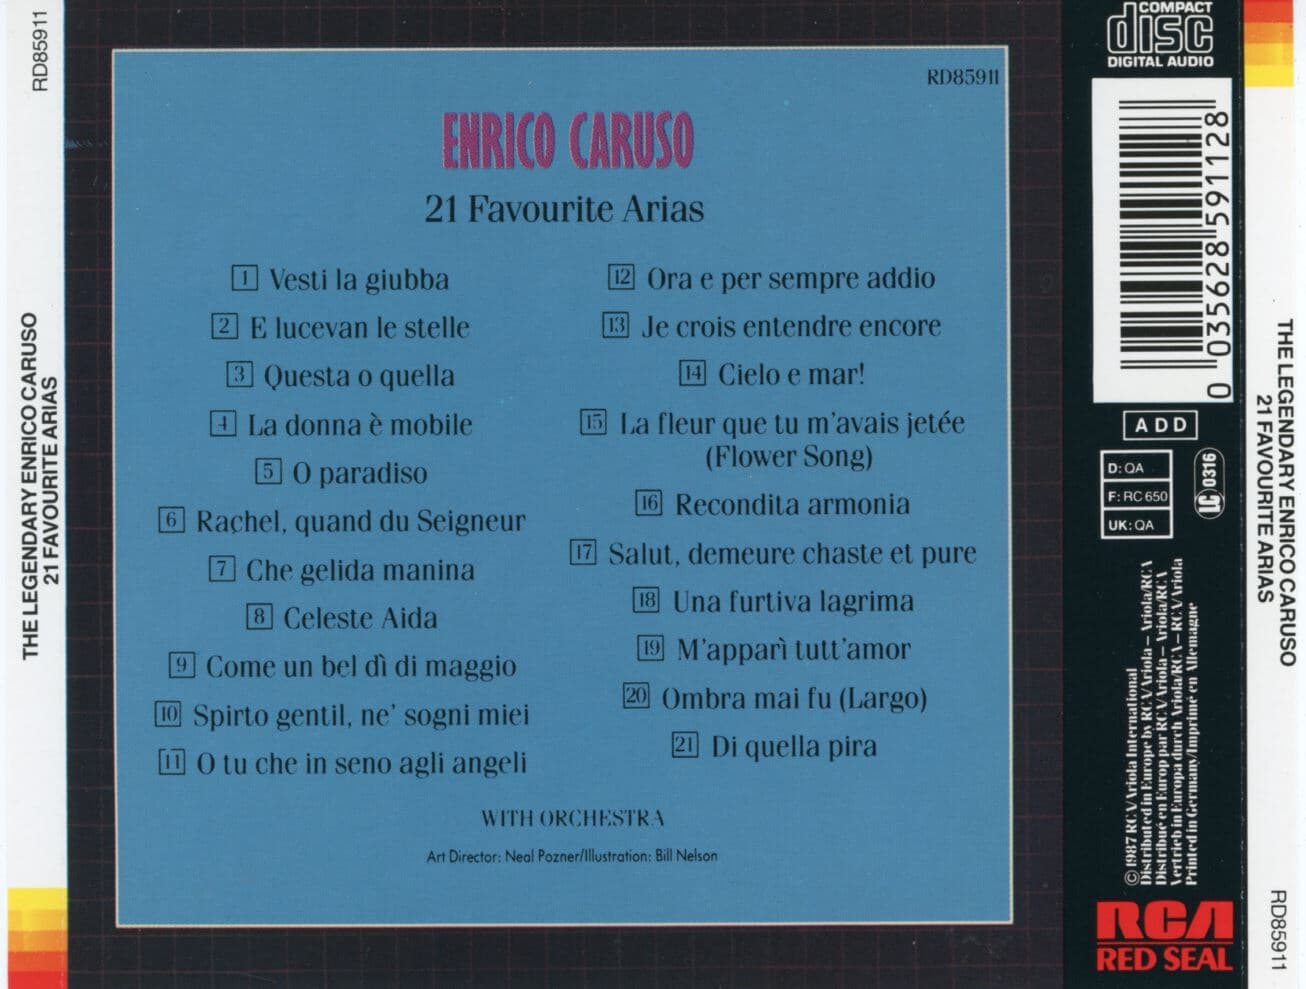 엔리코 카루소 - Enrico Caruso - The Legendary Enrico Caruso 21 Favorite Arias [독일발매]